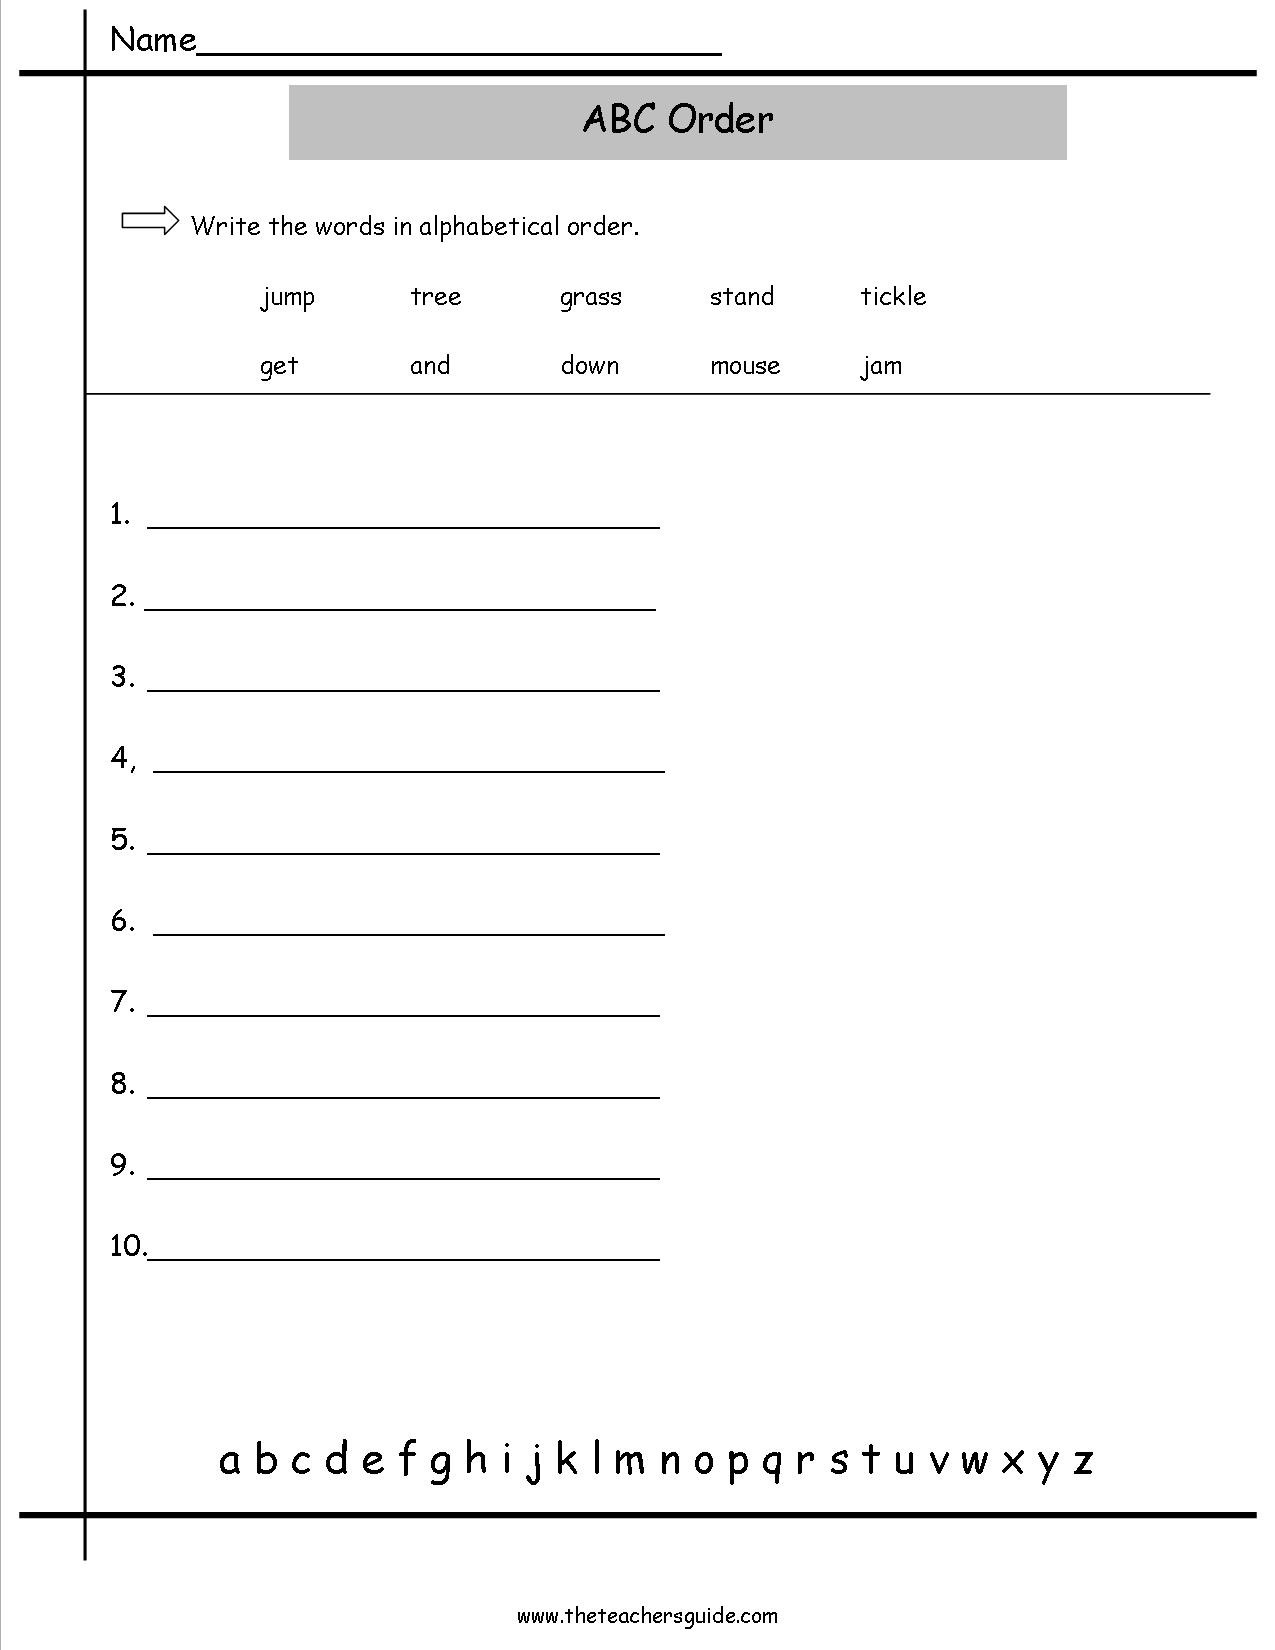 Alphabetical order Worksheets 2nd Grade Worksheet Arranging Words In Alphabetical order